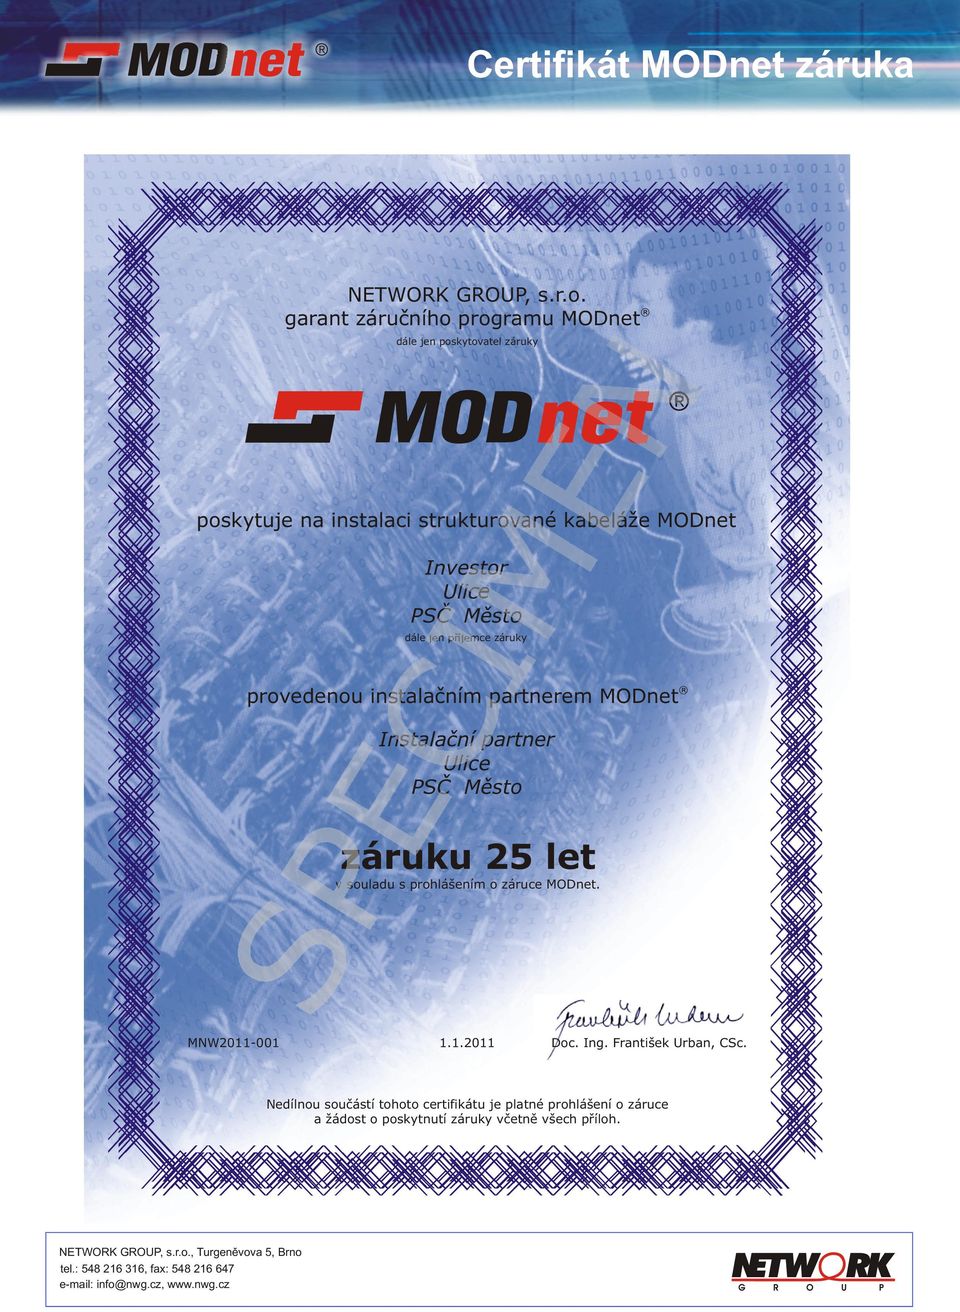 MODnet Instalaèní partner Ulice PSÈ Mìst záruku 25 let v suladu s prhlášením záruce MODnet. MNW2011-001 1.1.2011 Dc. Ing.